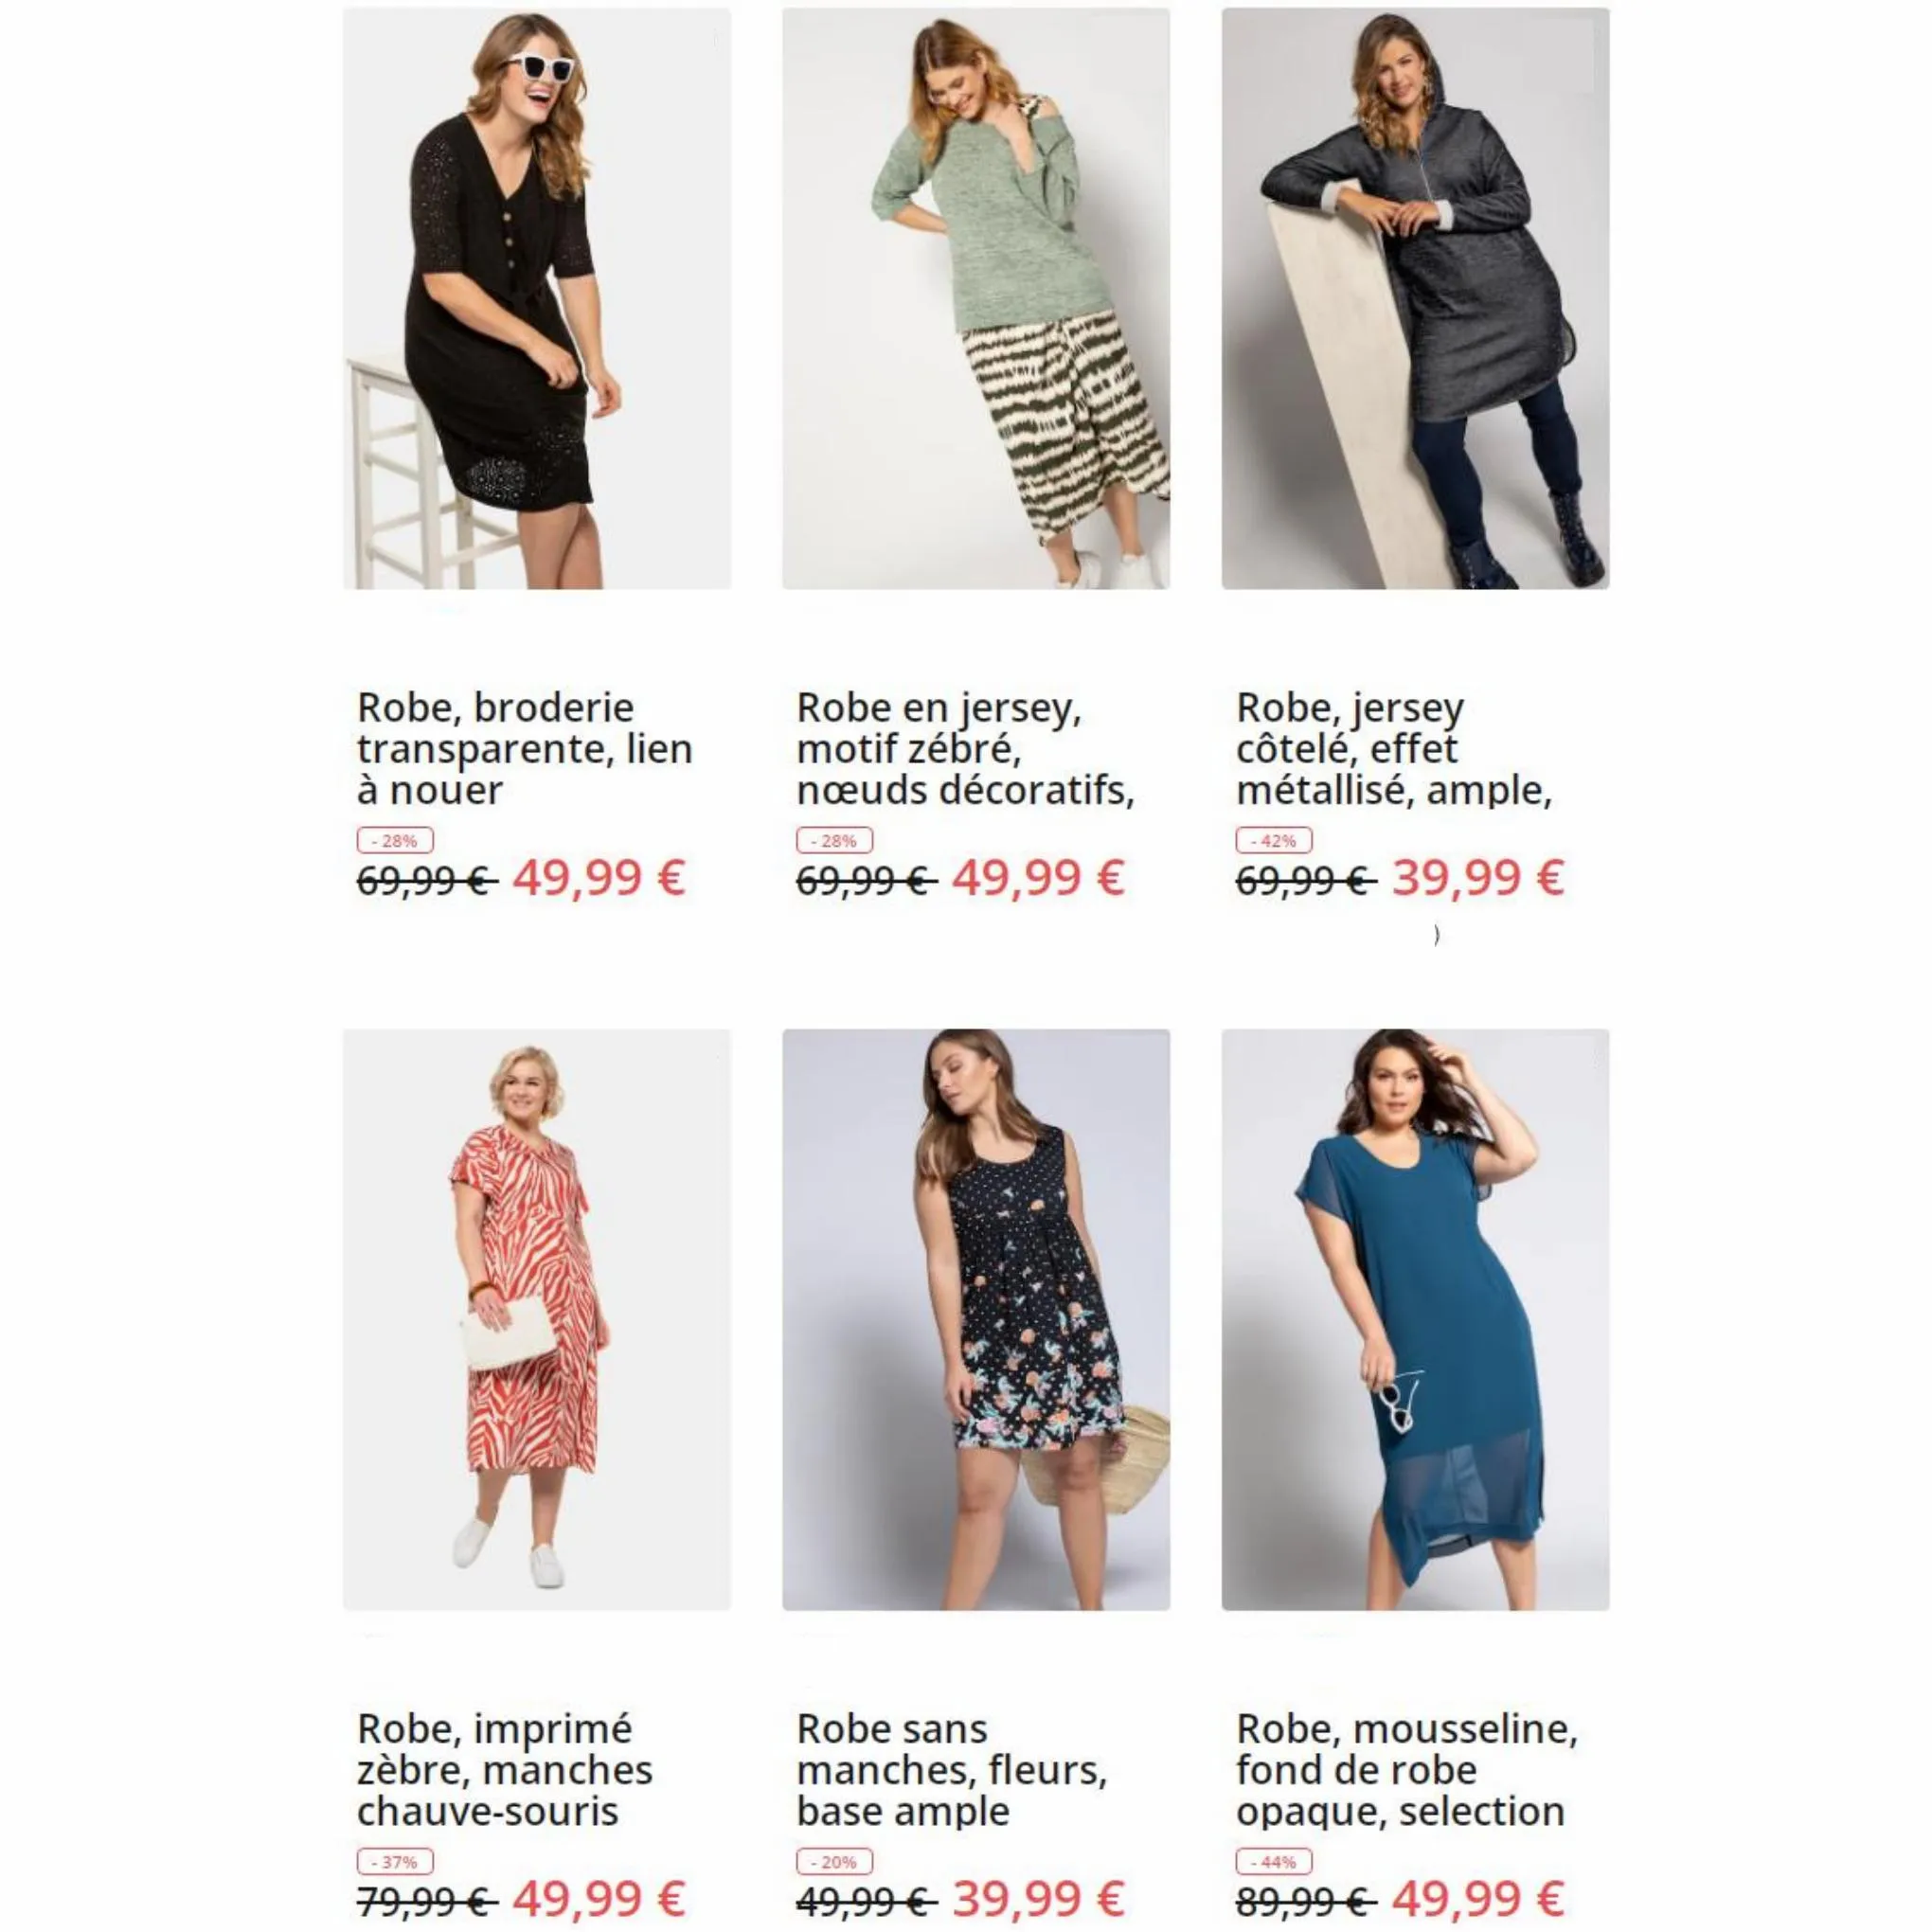 Catalogue Petits prix sur les robes, page 00008